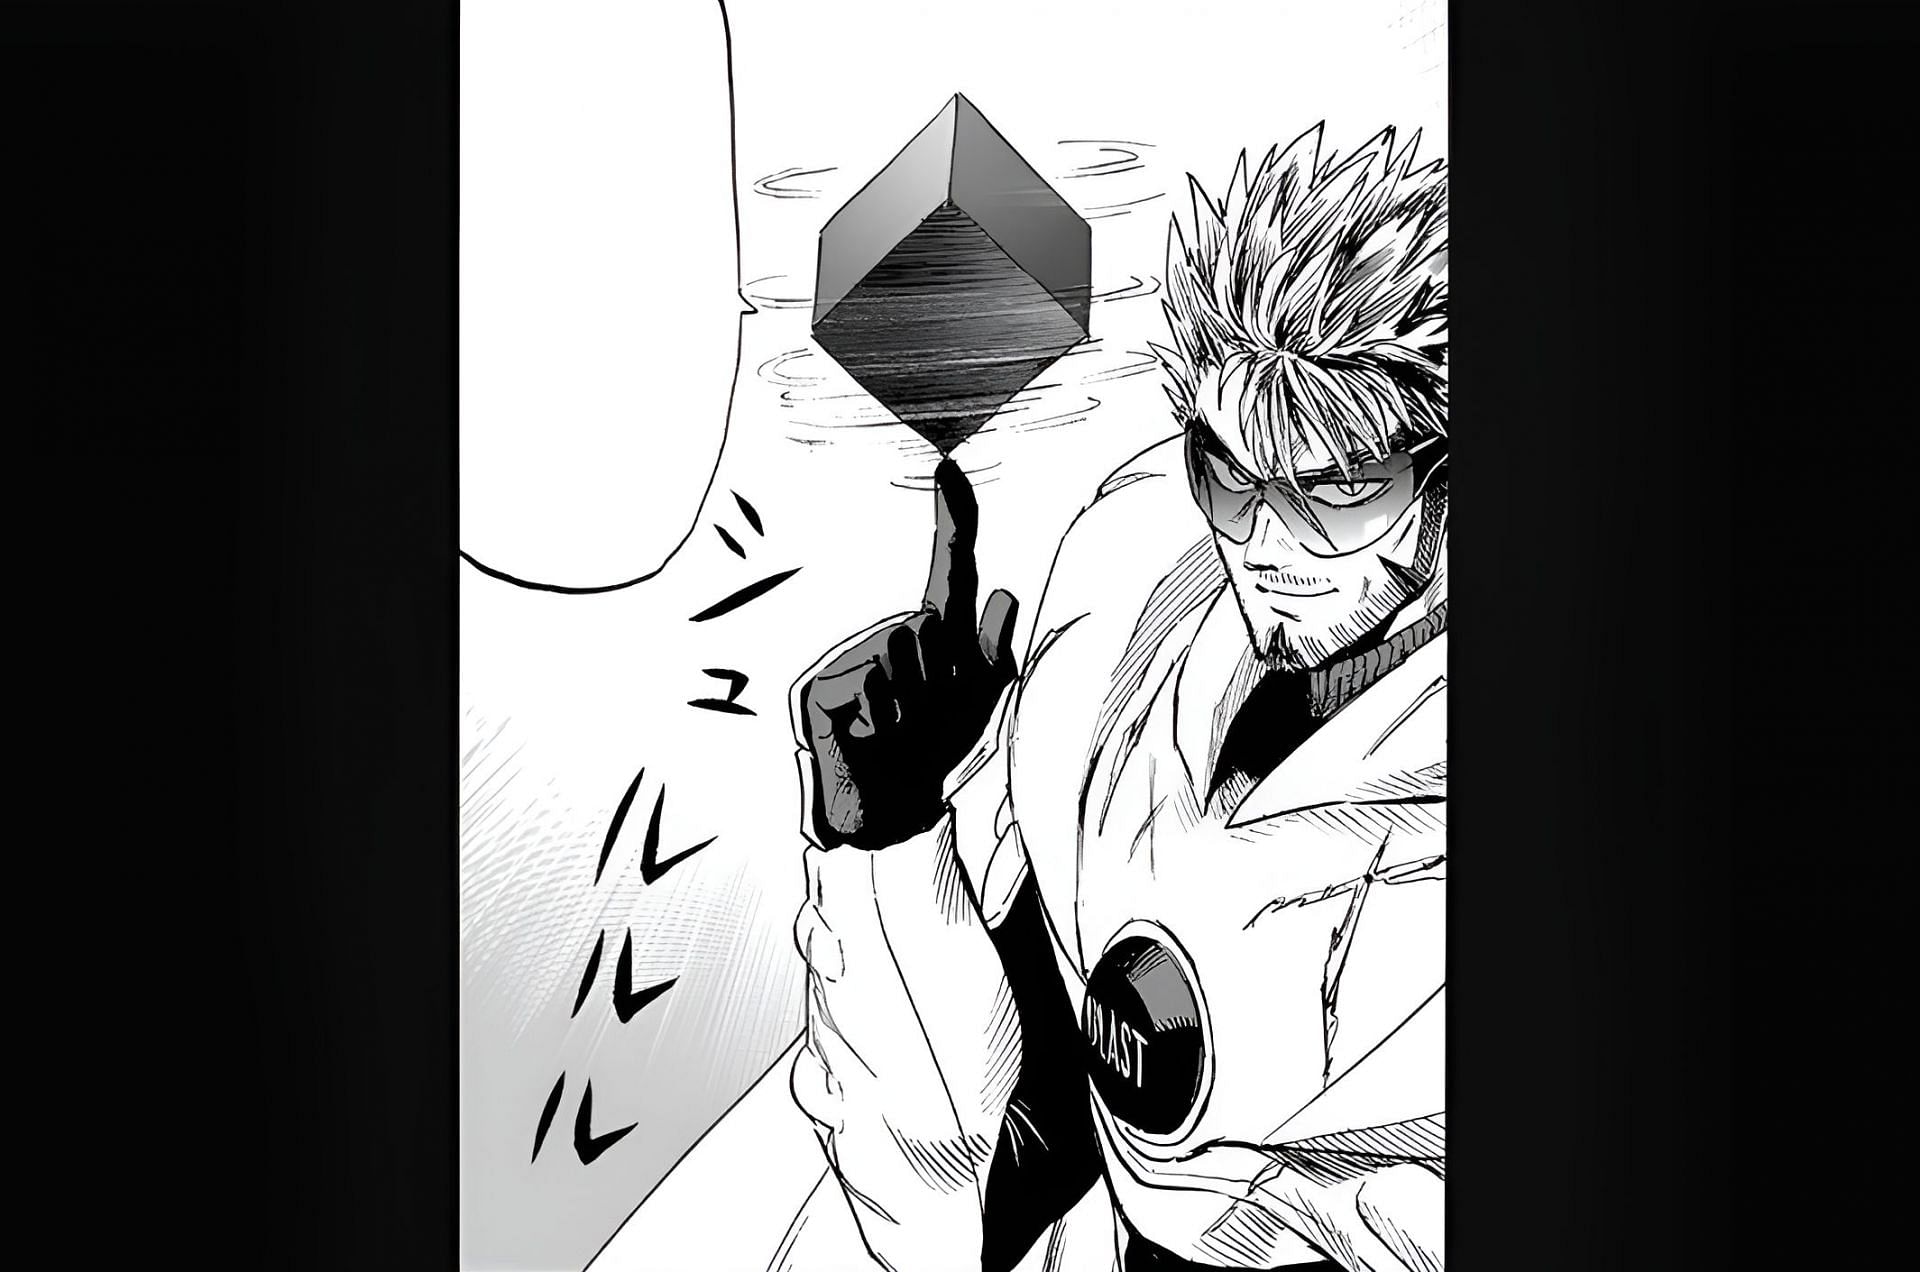 Blast retrieving the God Cube and making contact with Saitama in the manga (Image via Shueisha/Yusuke Murata and ONE)